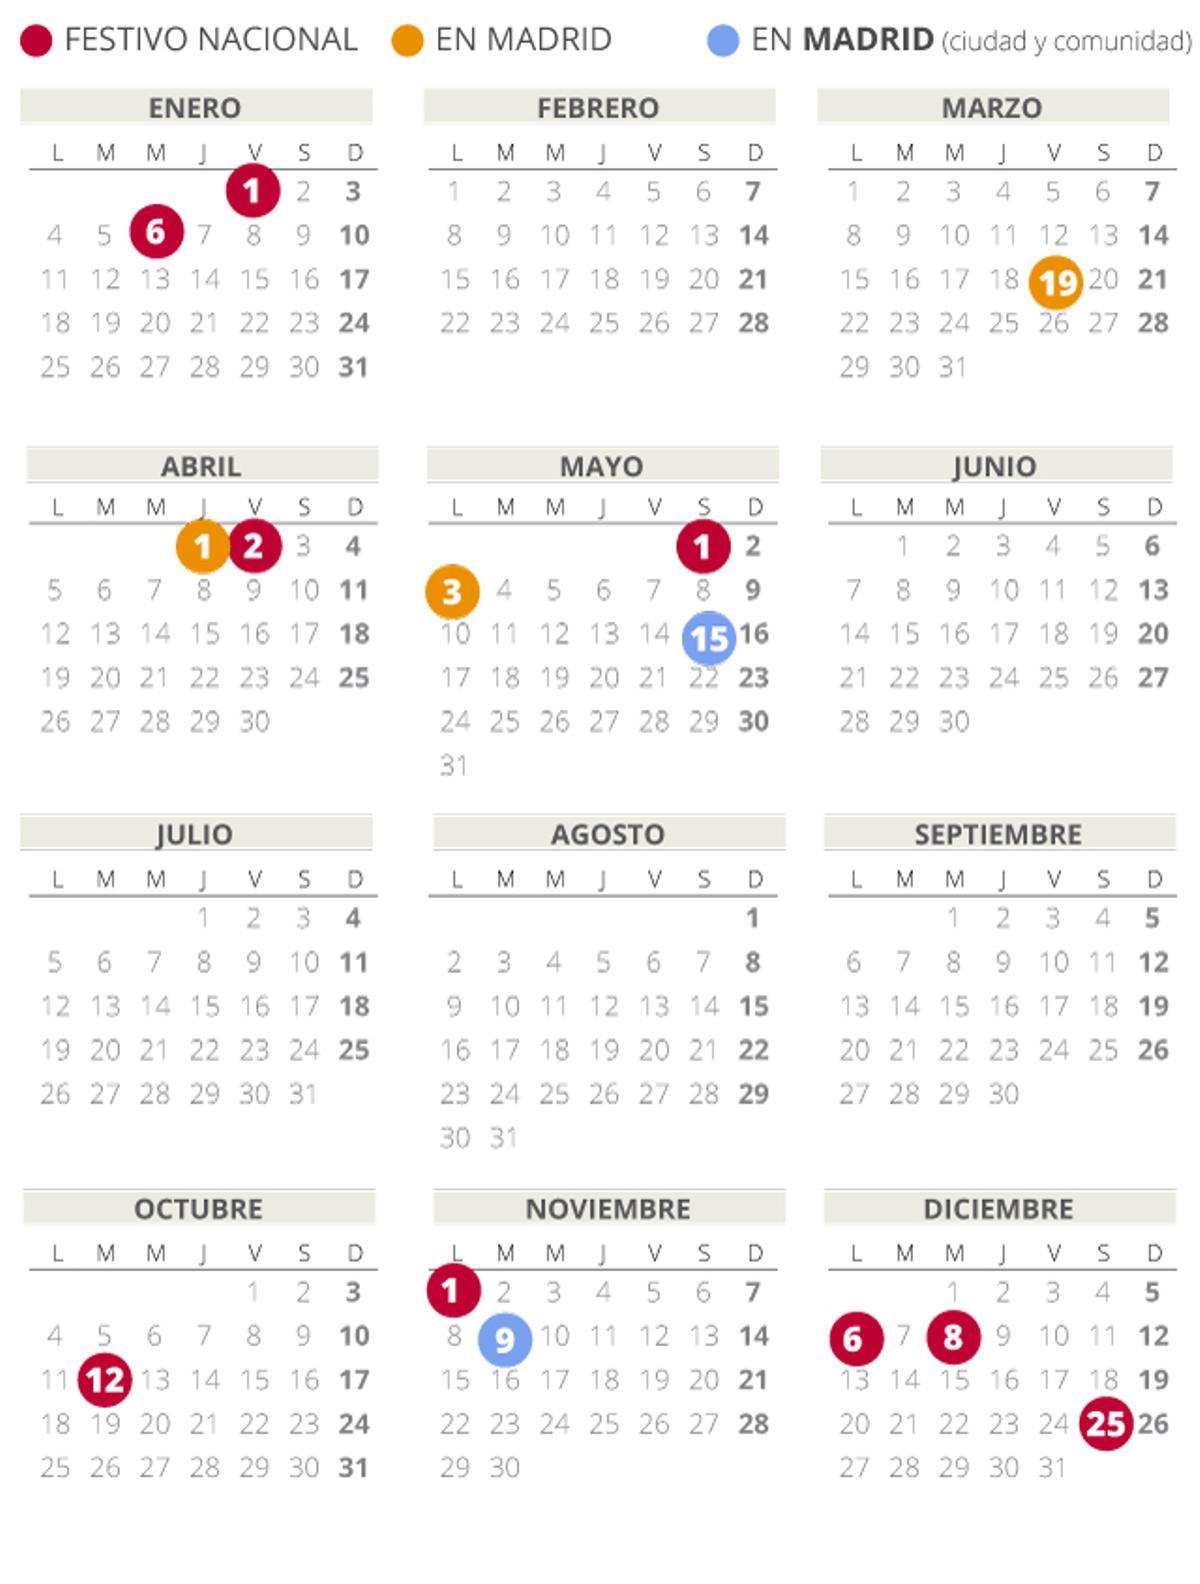 Calendario laboral de Madrid del 2021.